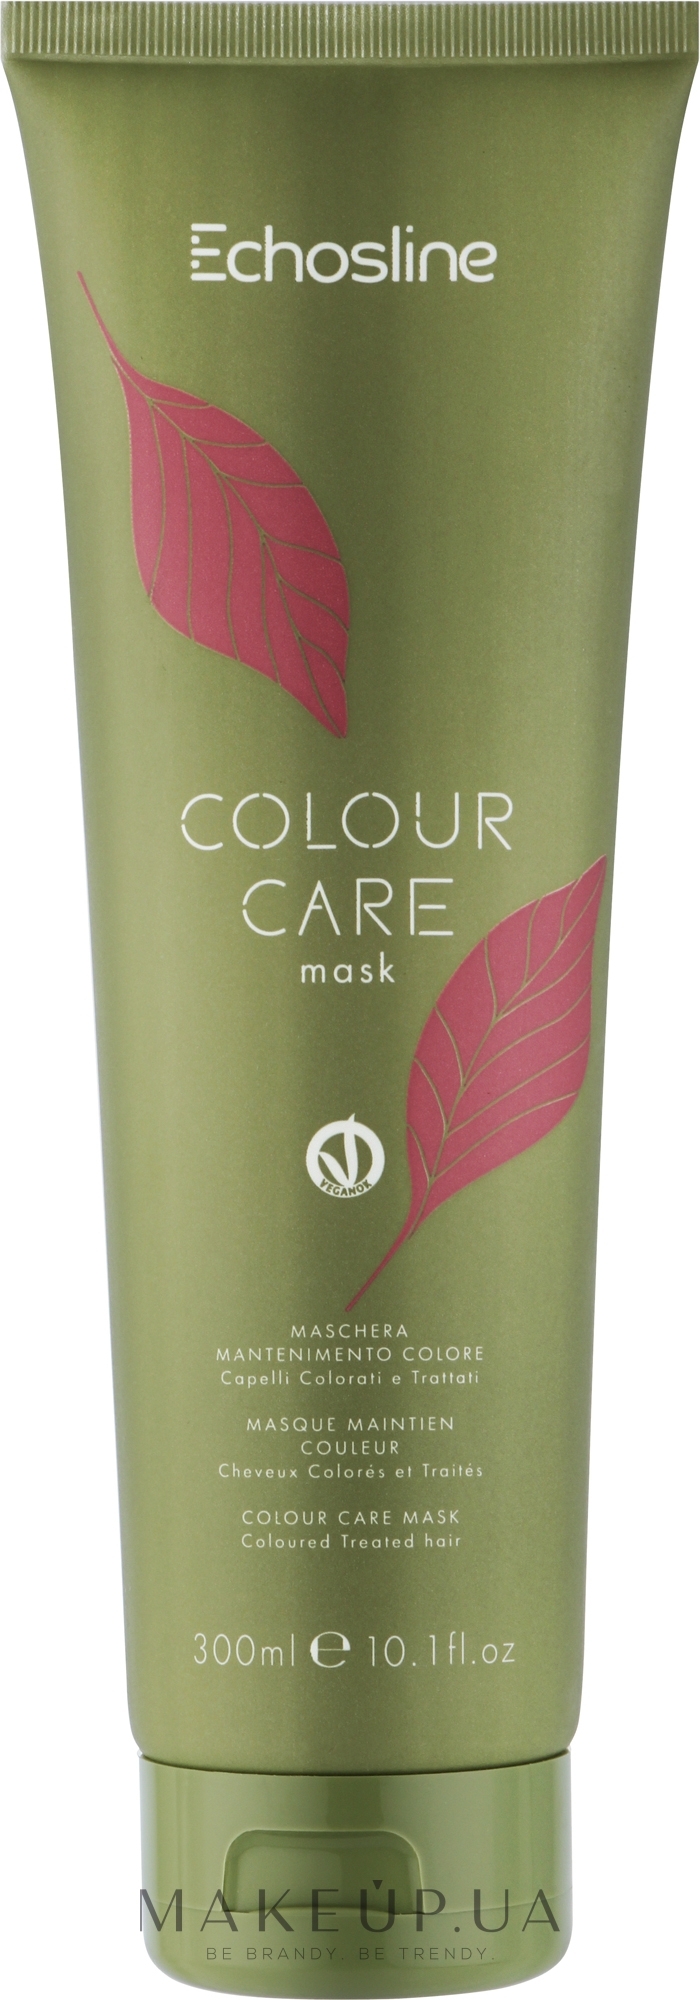 Маска для підтримання кольору волосся - Echosline Colour Care Mask — фото 300ml